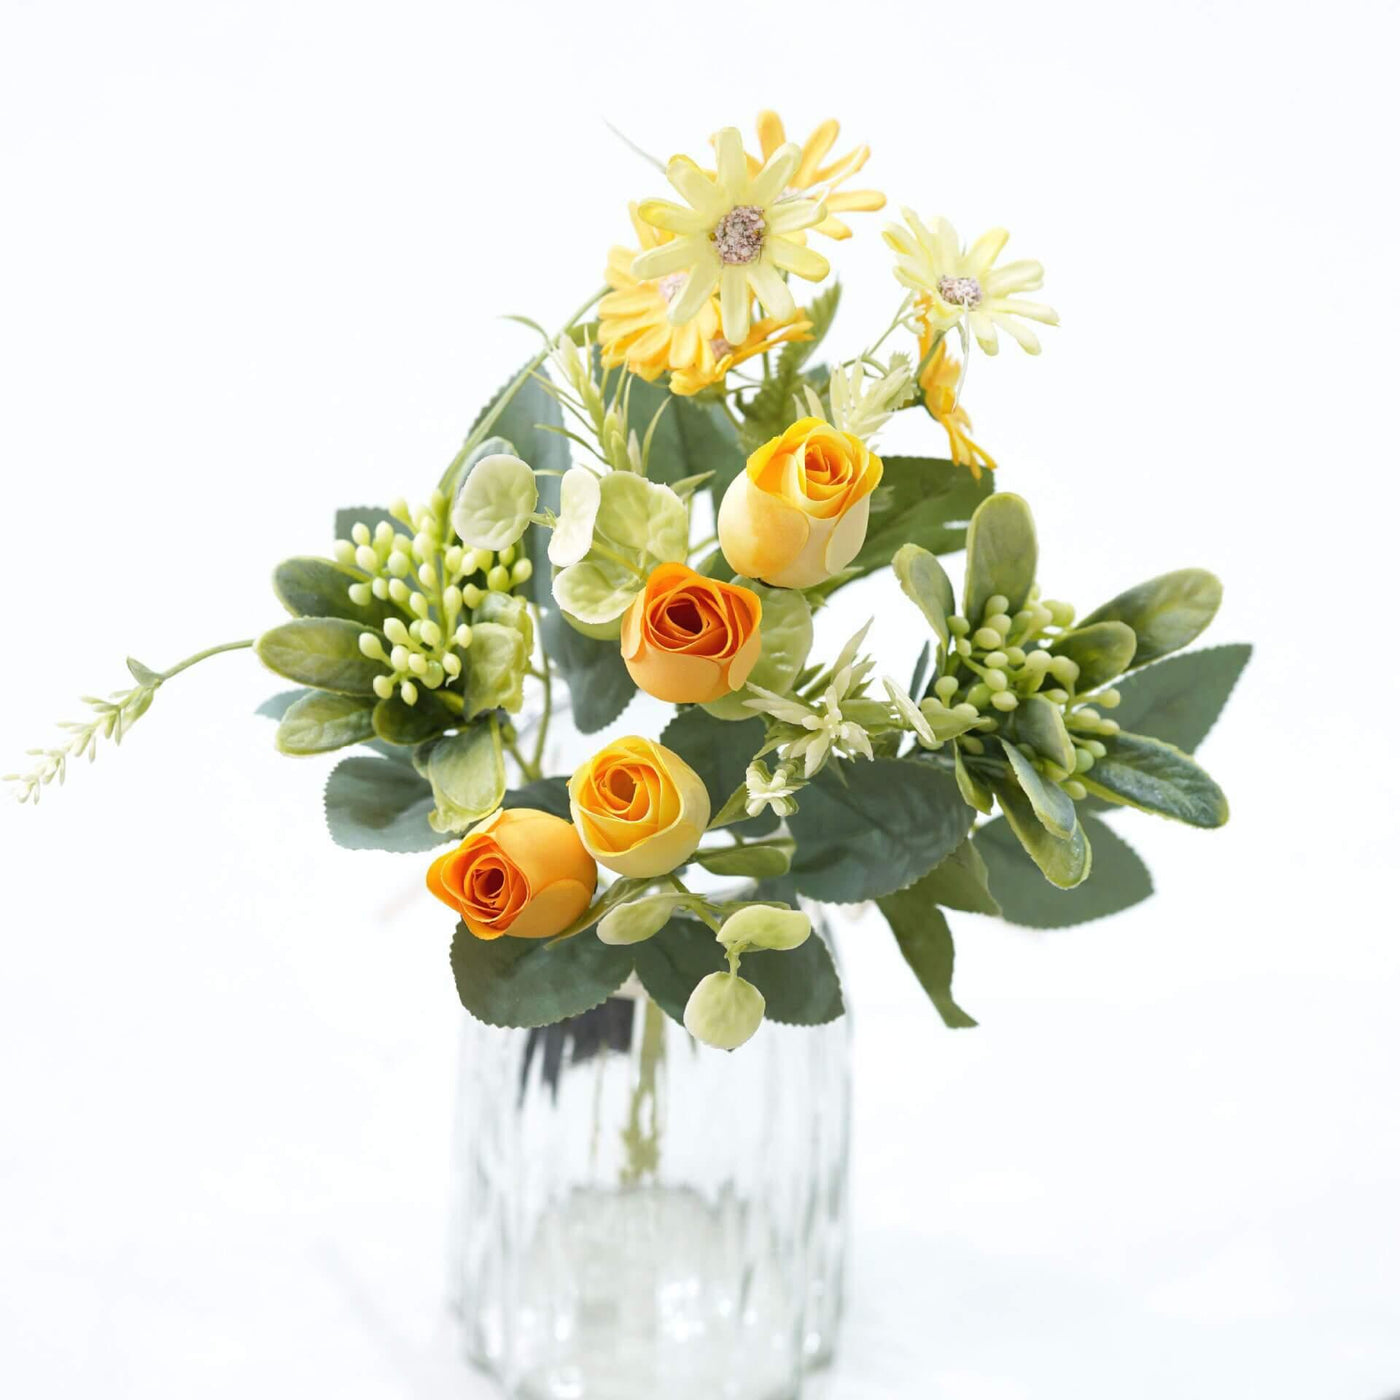 Cette image montre un bouquet de roses artificielles de couleur jaune